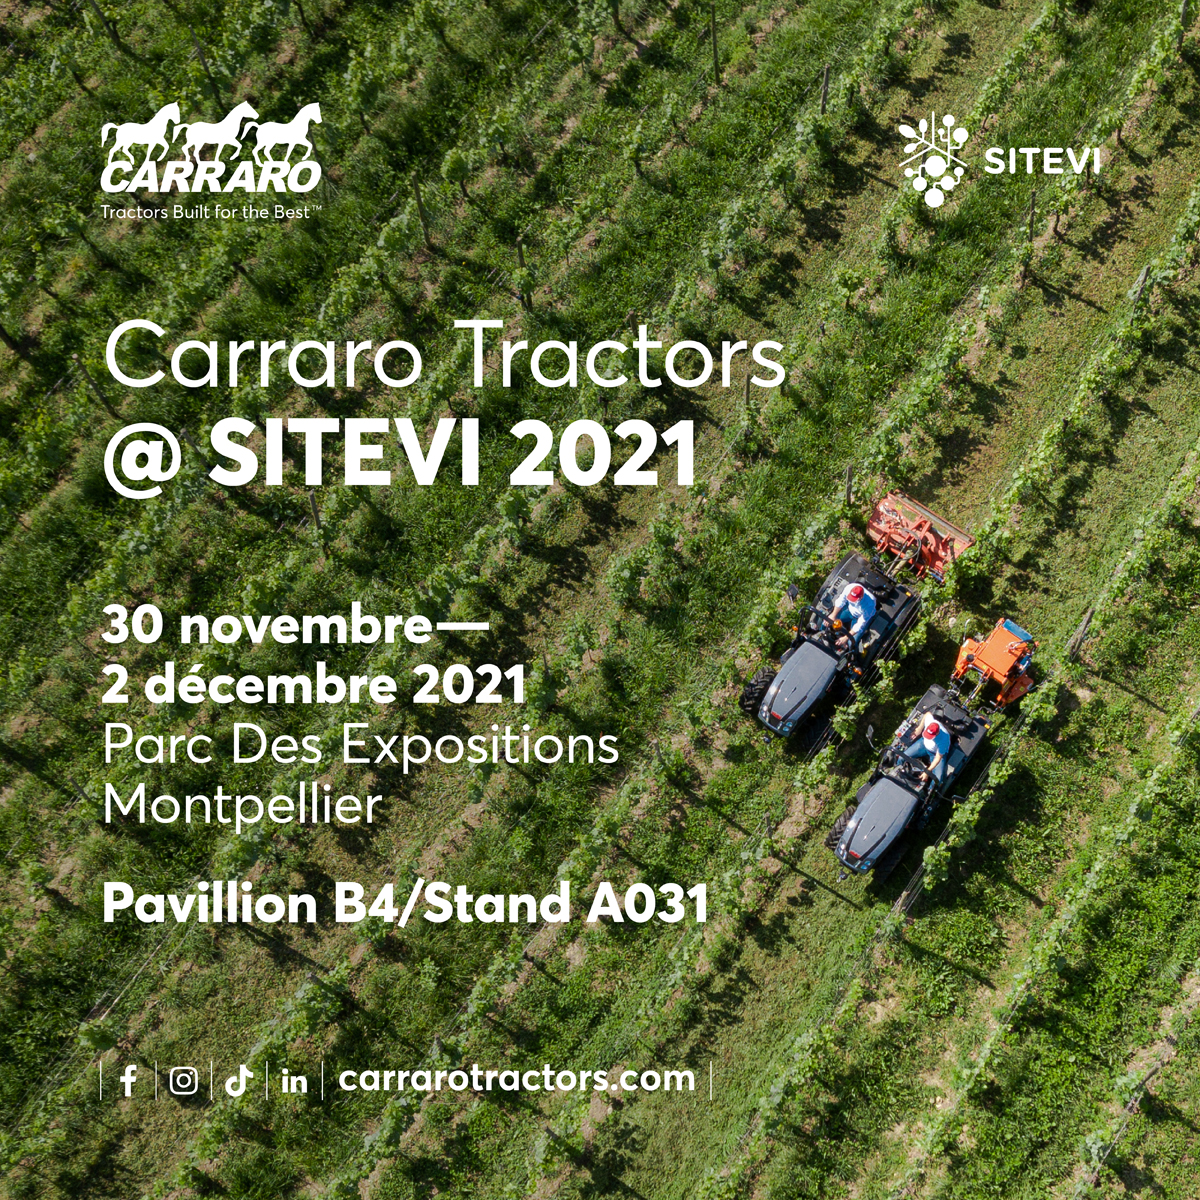 Carraro Tractors: il marchio degli specialisti sarà a Sitevi 2021